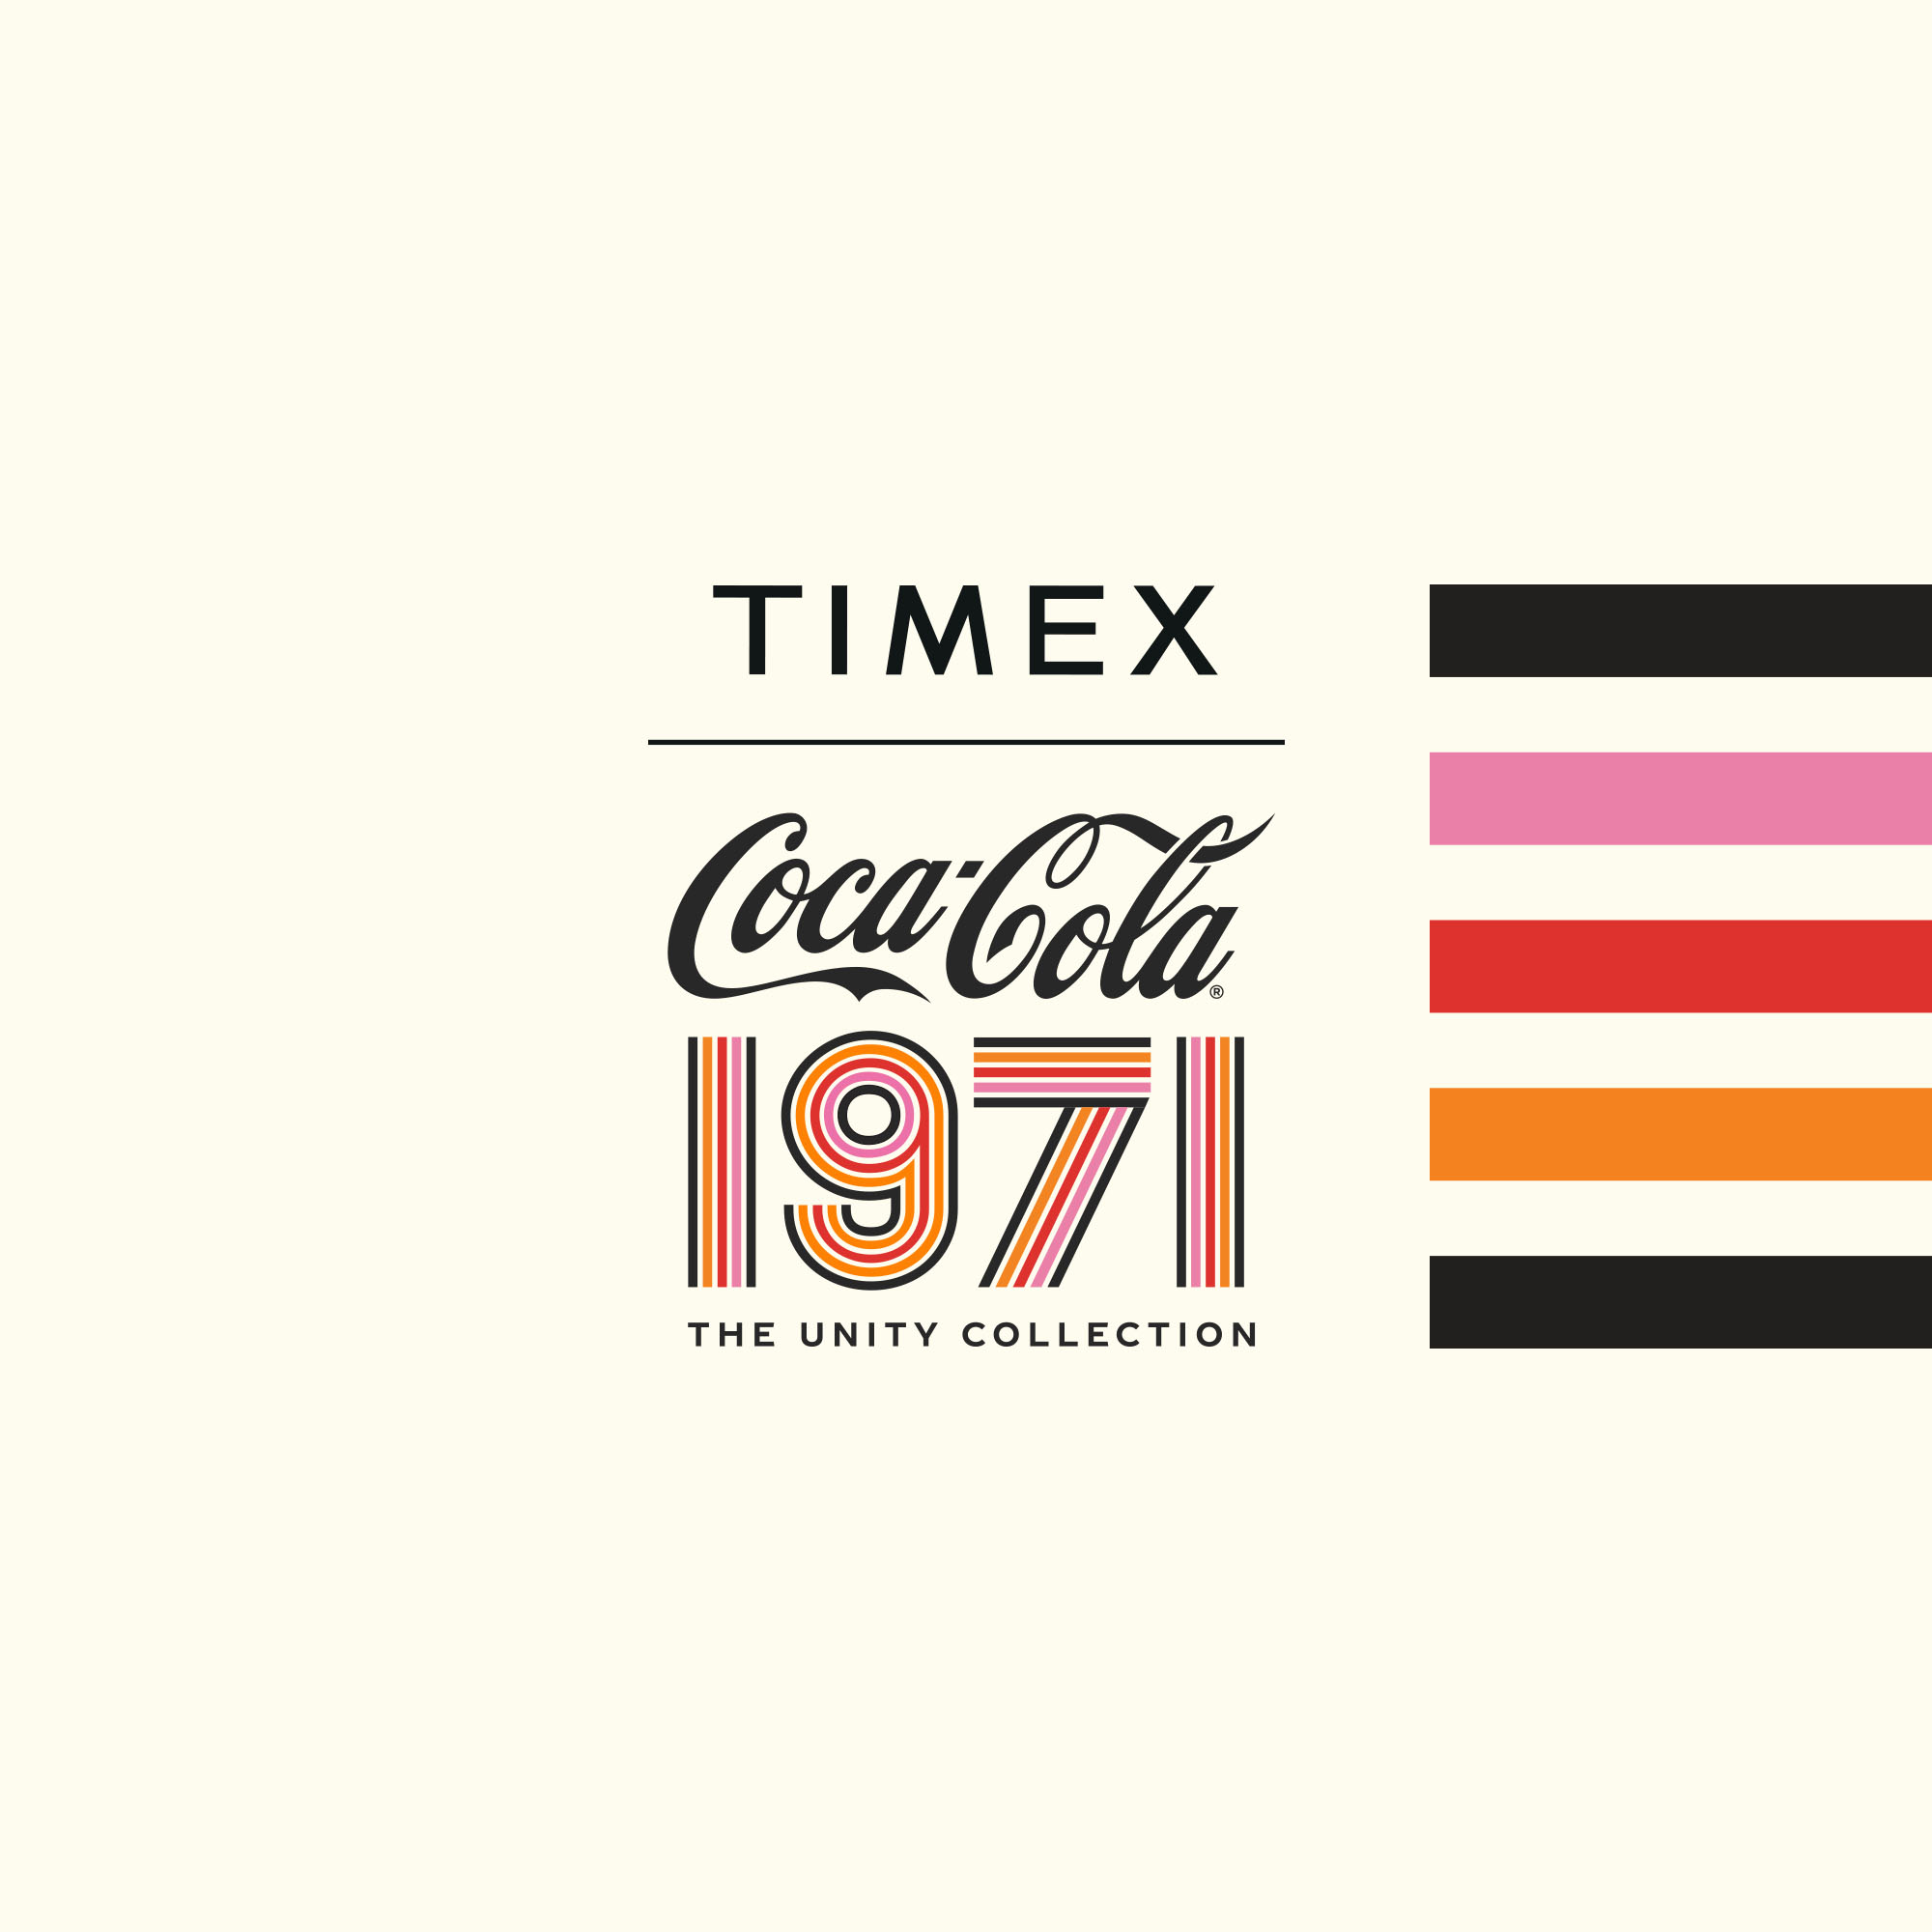 Timex Coca-Cola